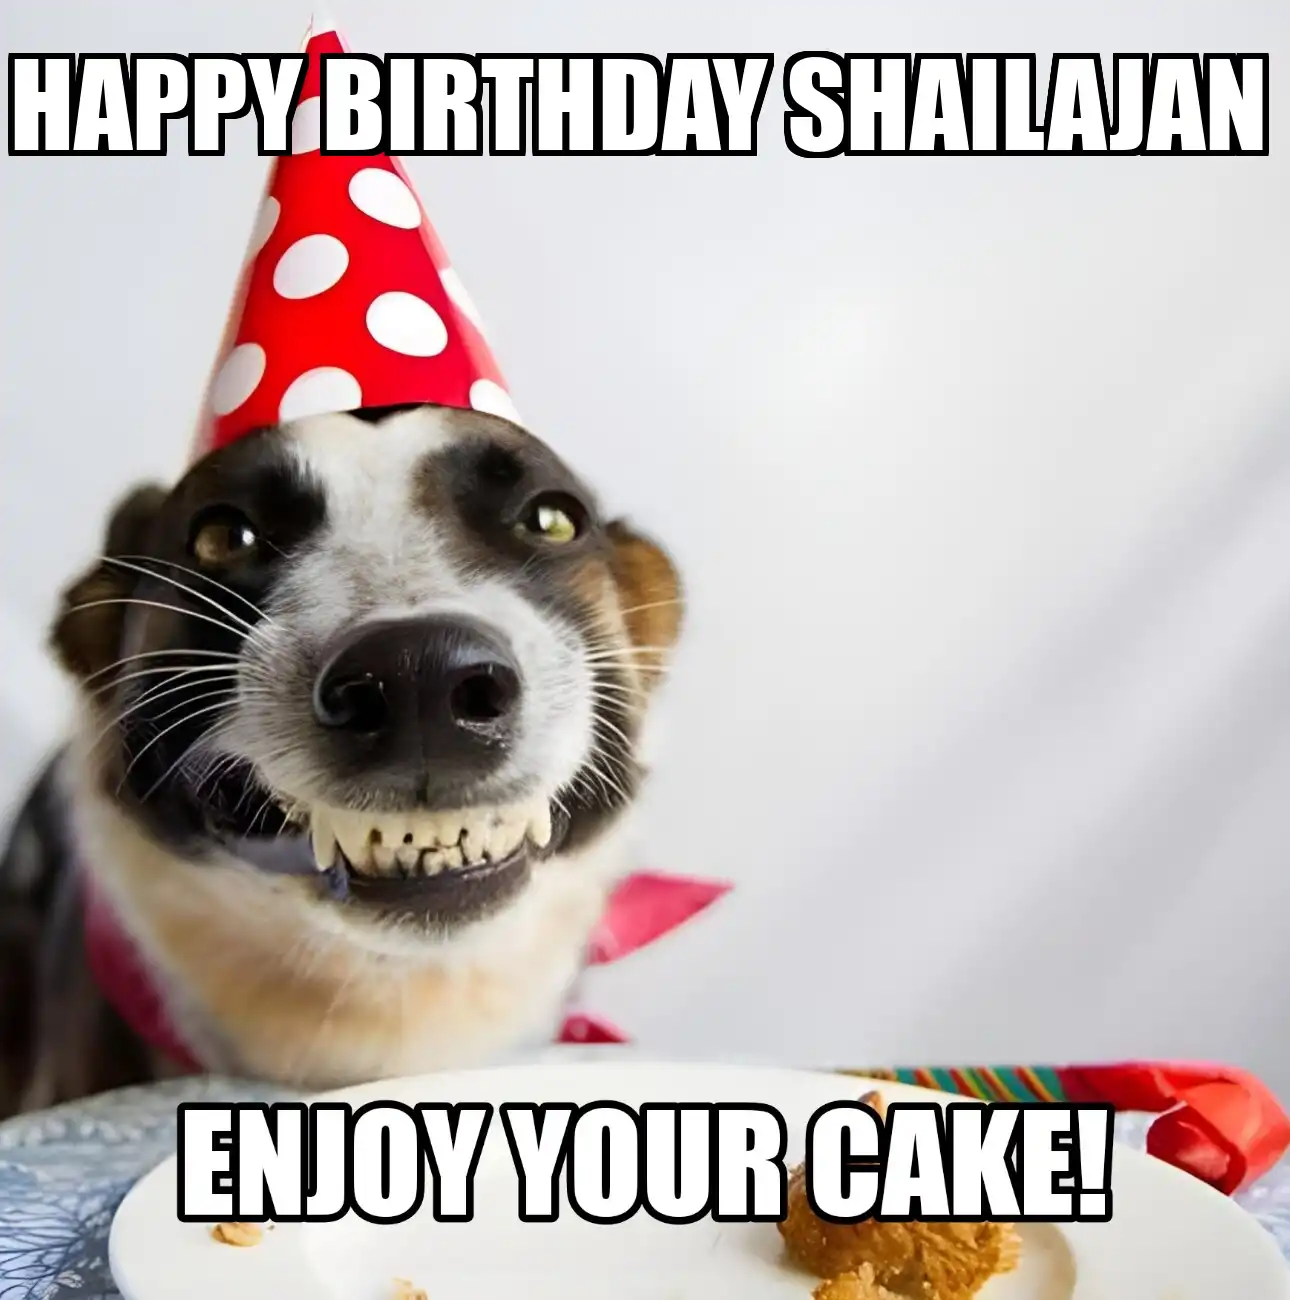 Happy Birthday Shailajan Enjoy Your Cake Dog Meme